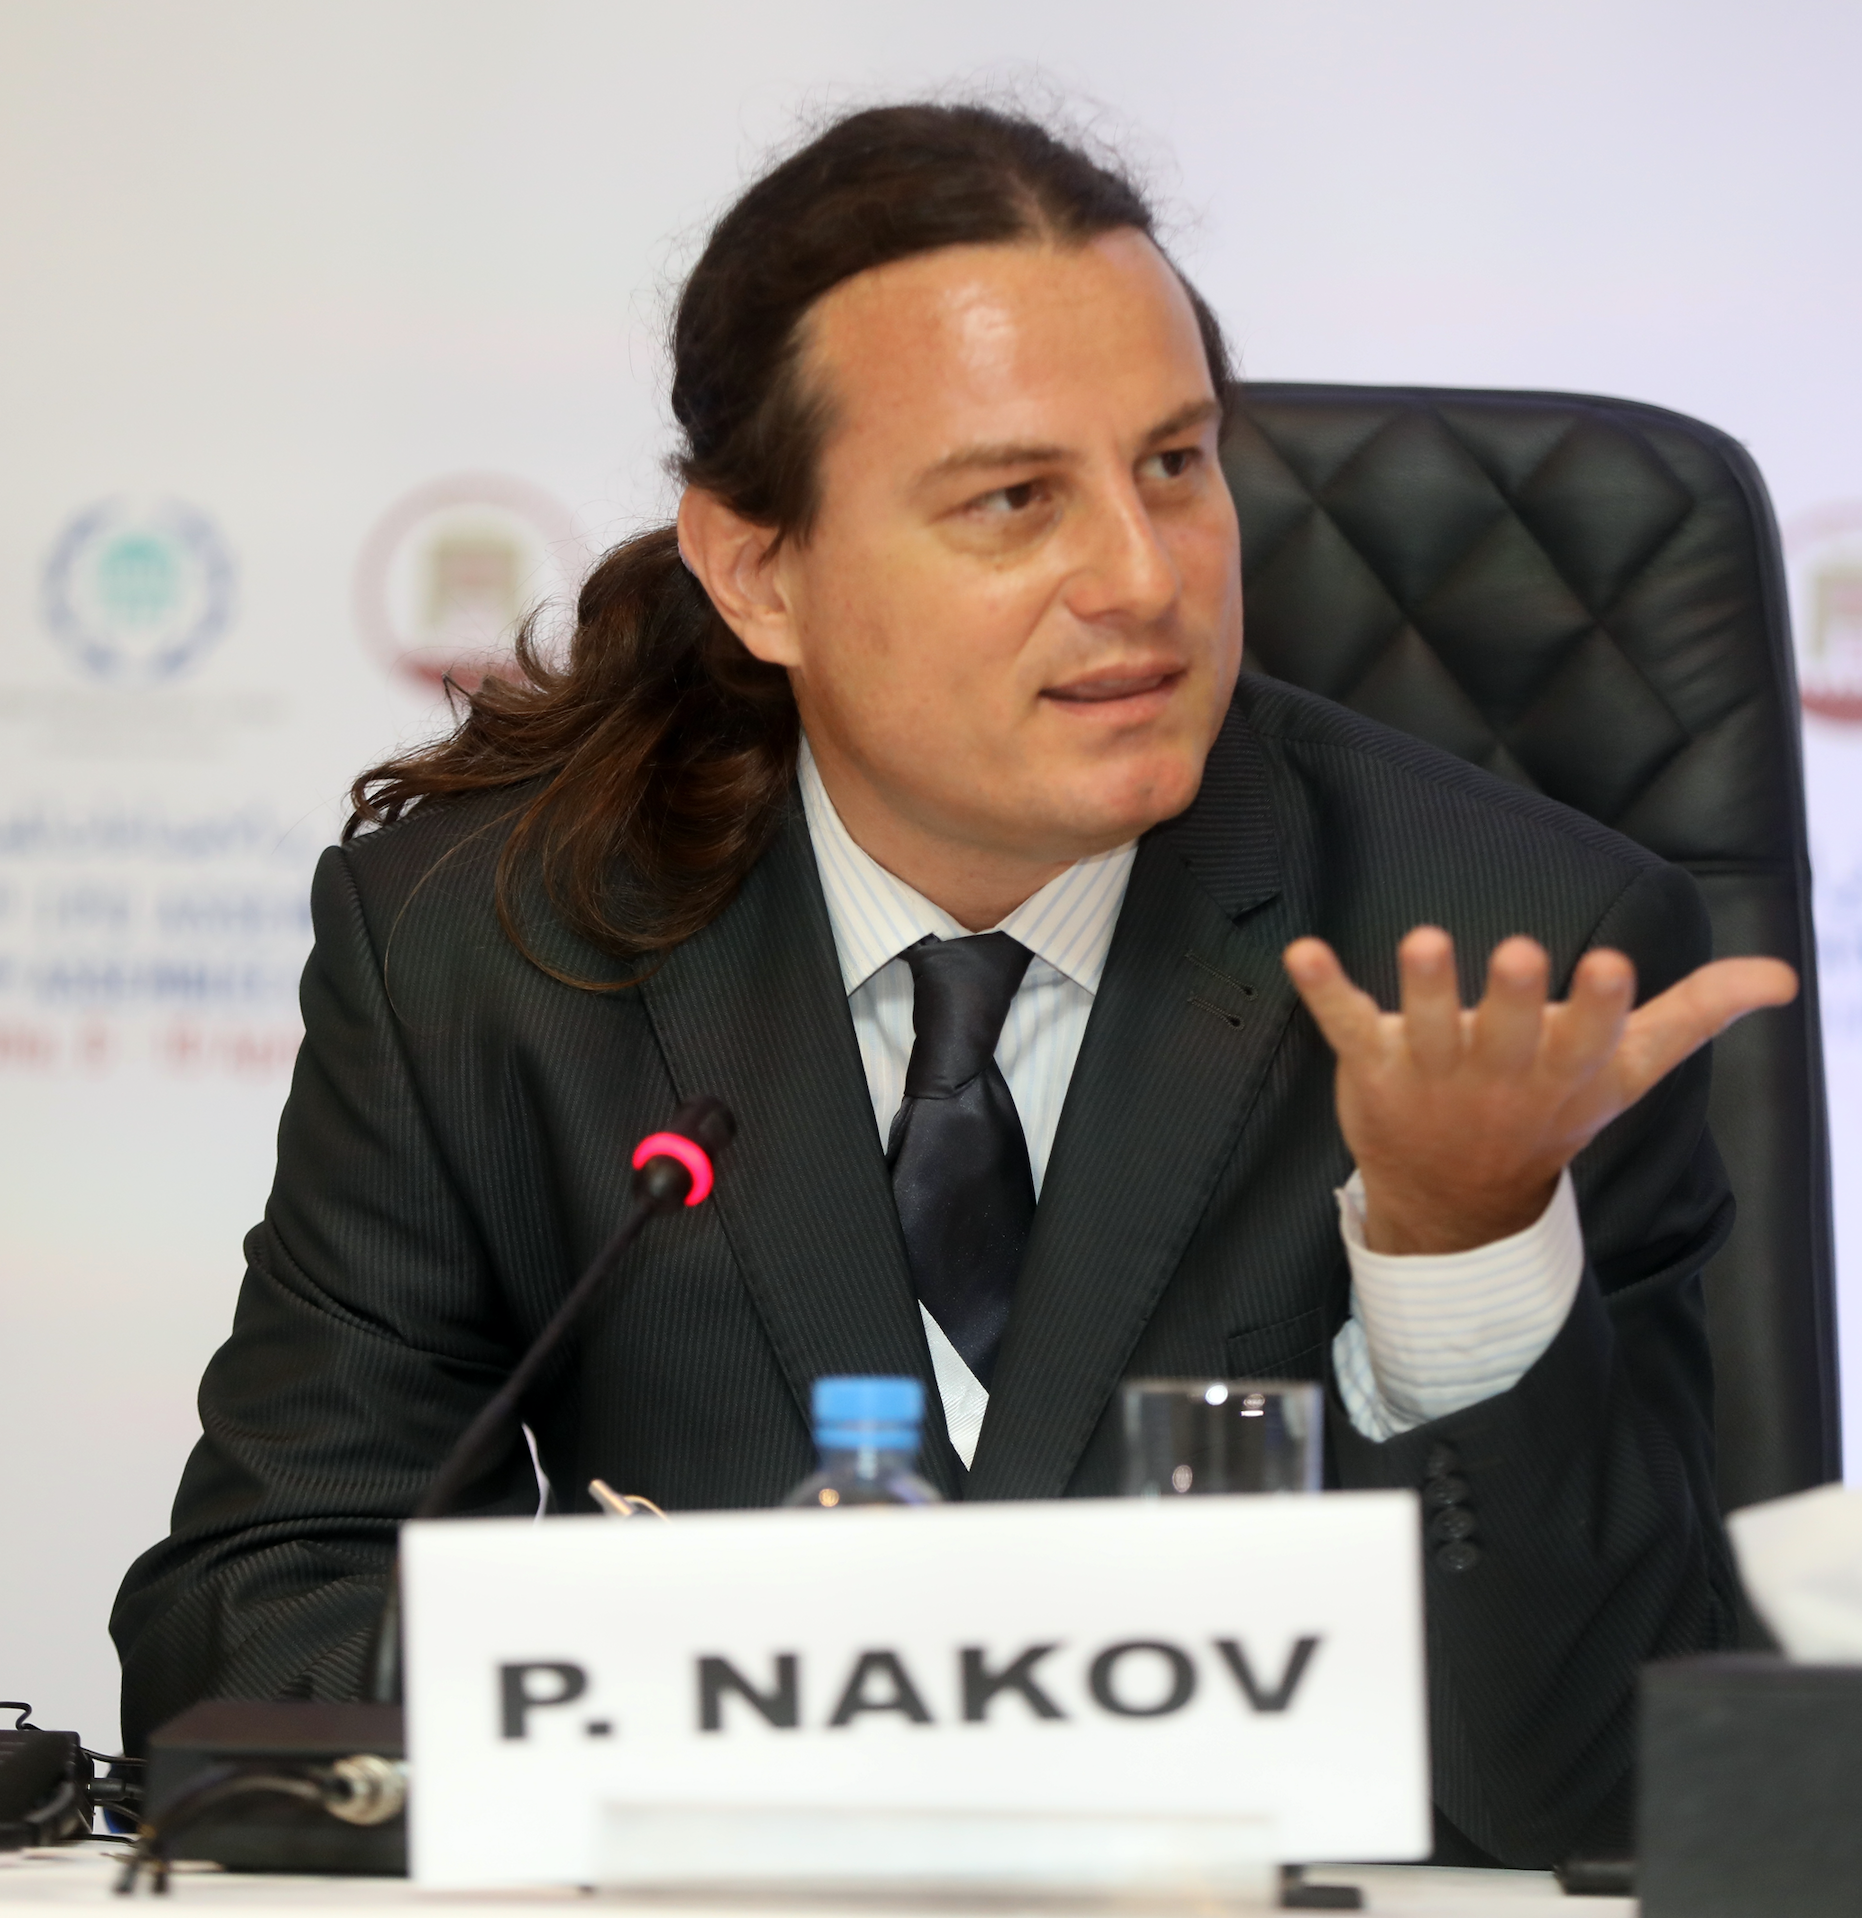 Dr. Preslav Nakov